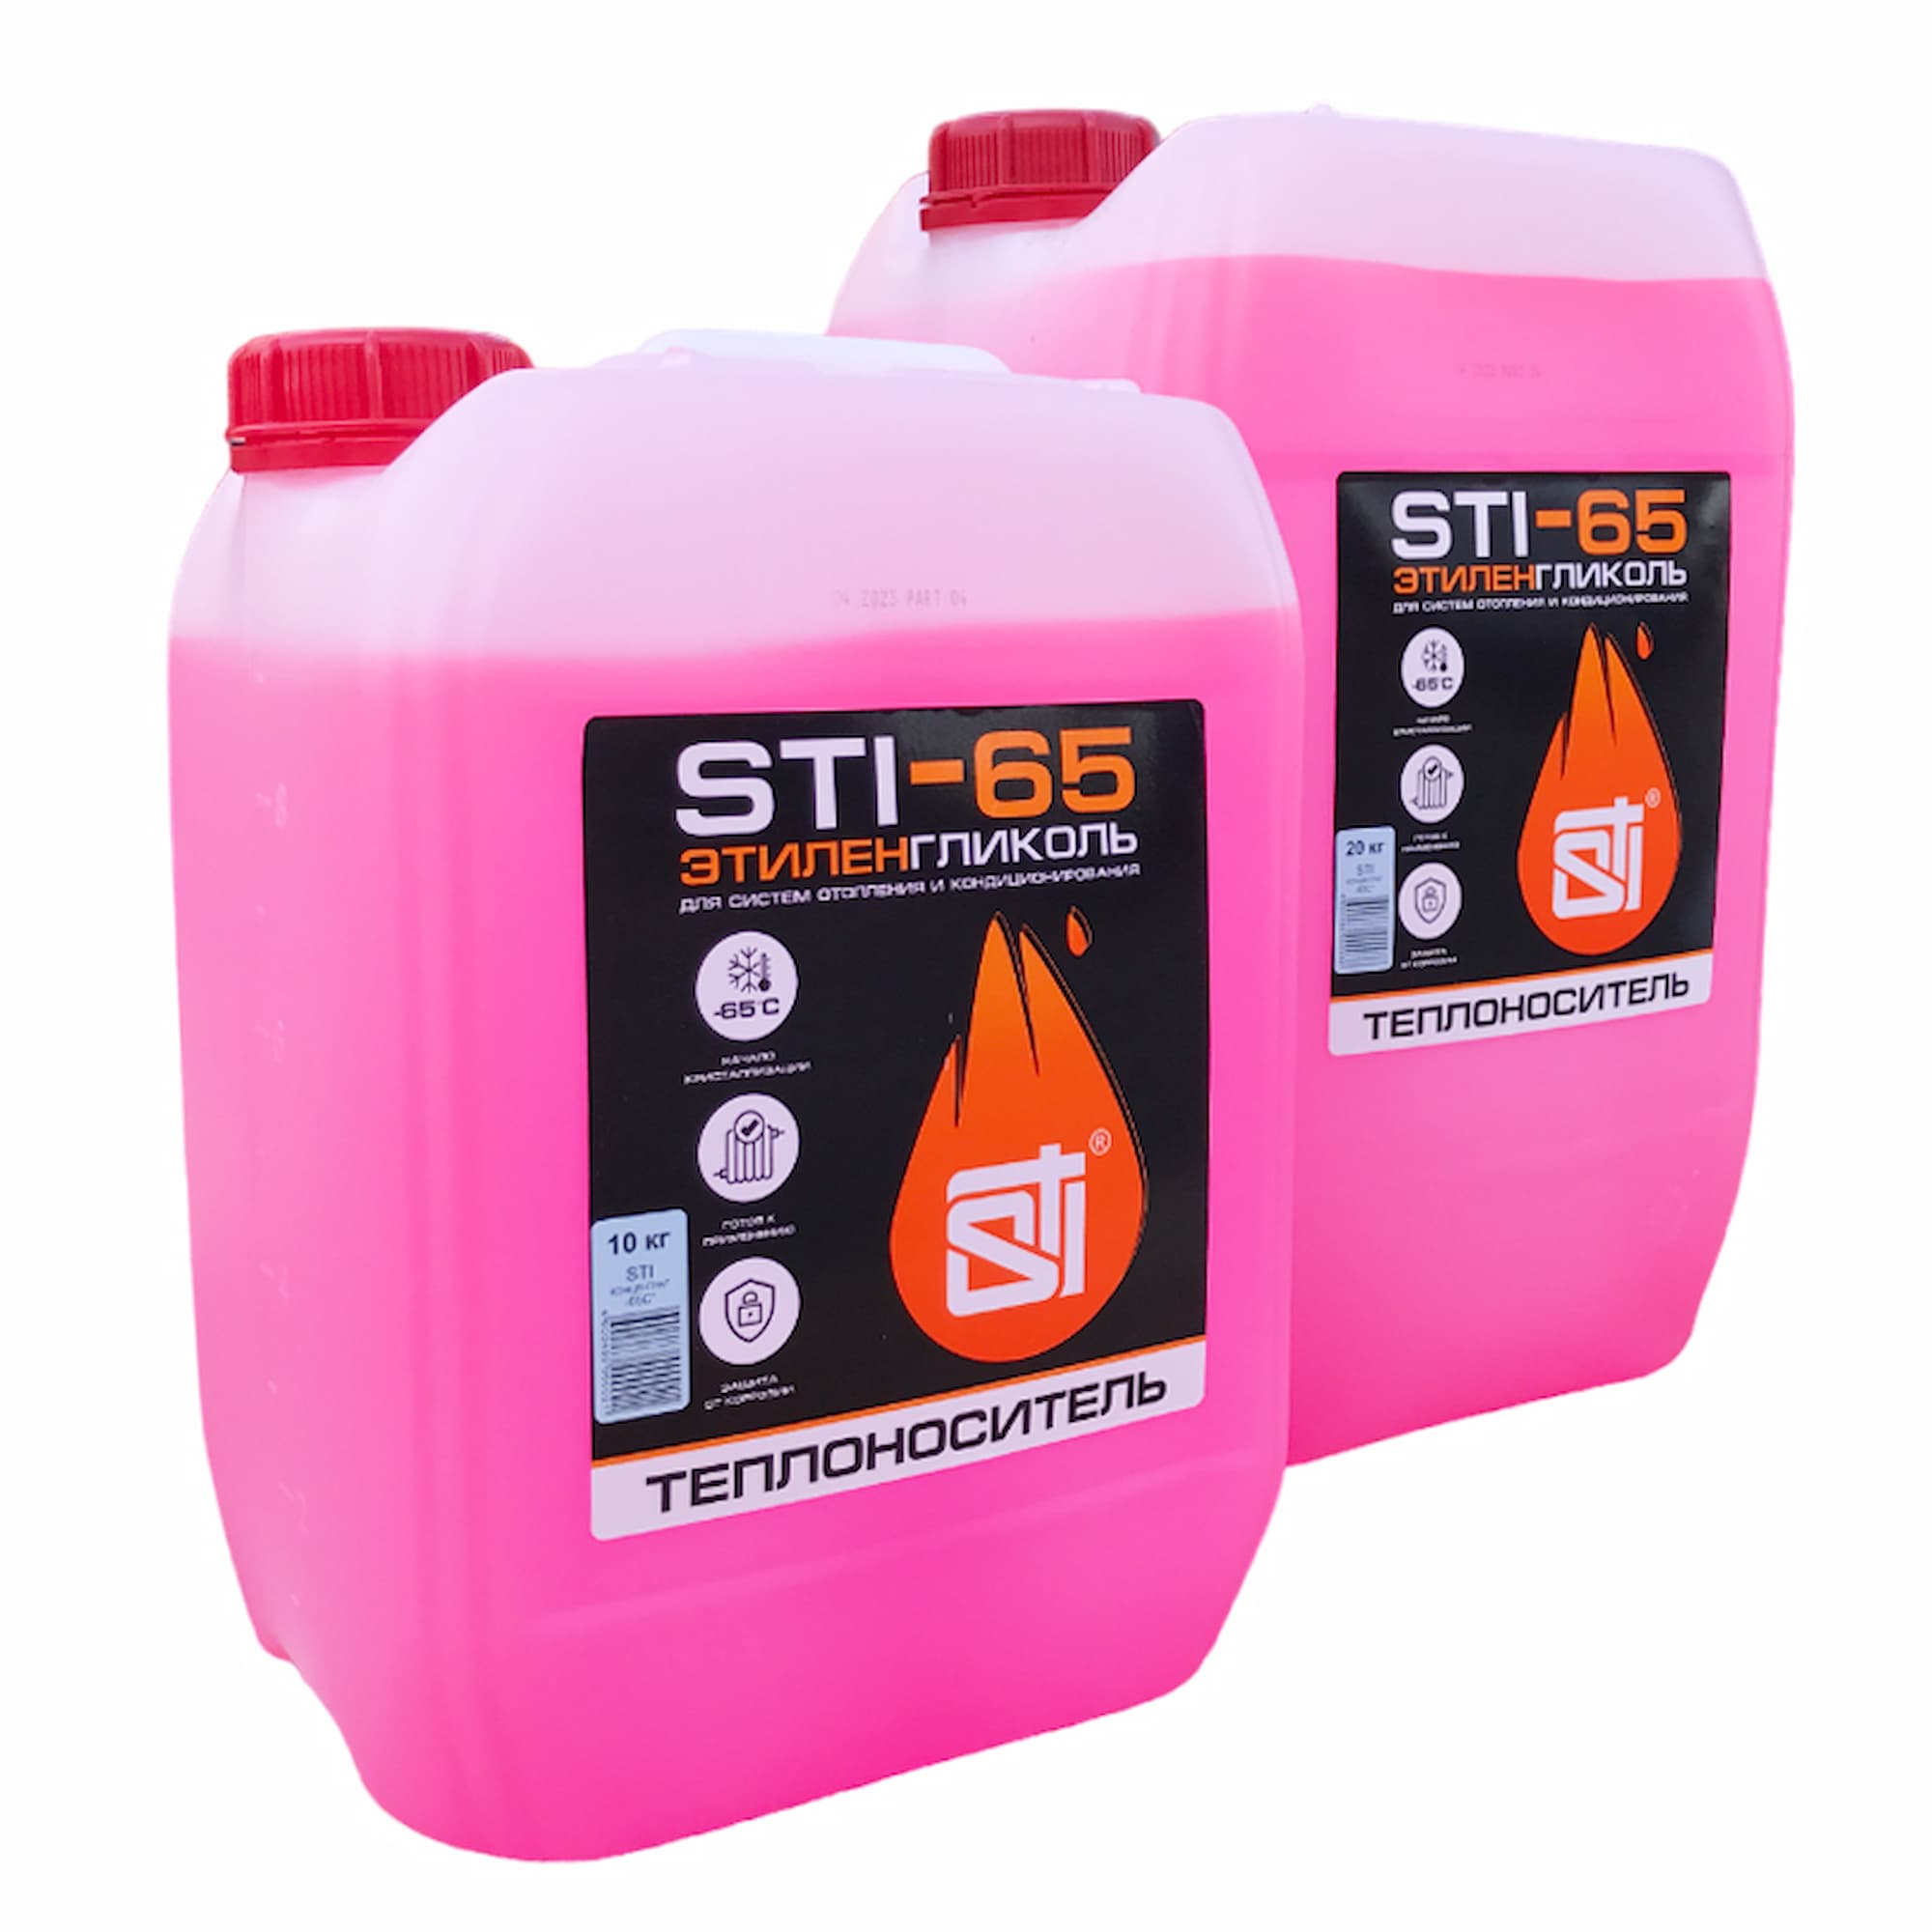 Теплоноситель (антифриз) STI этиленгликоль (-65°C) 20 кг. - фото